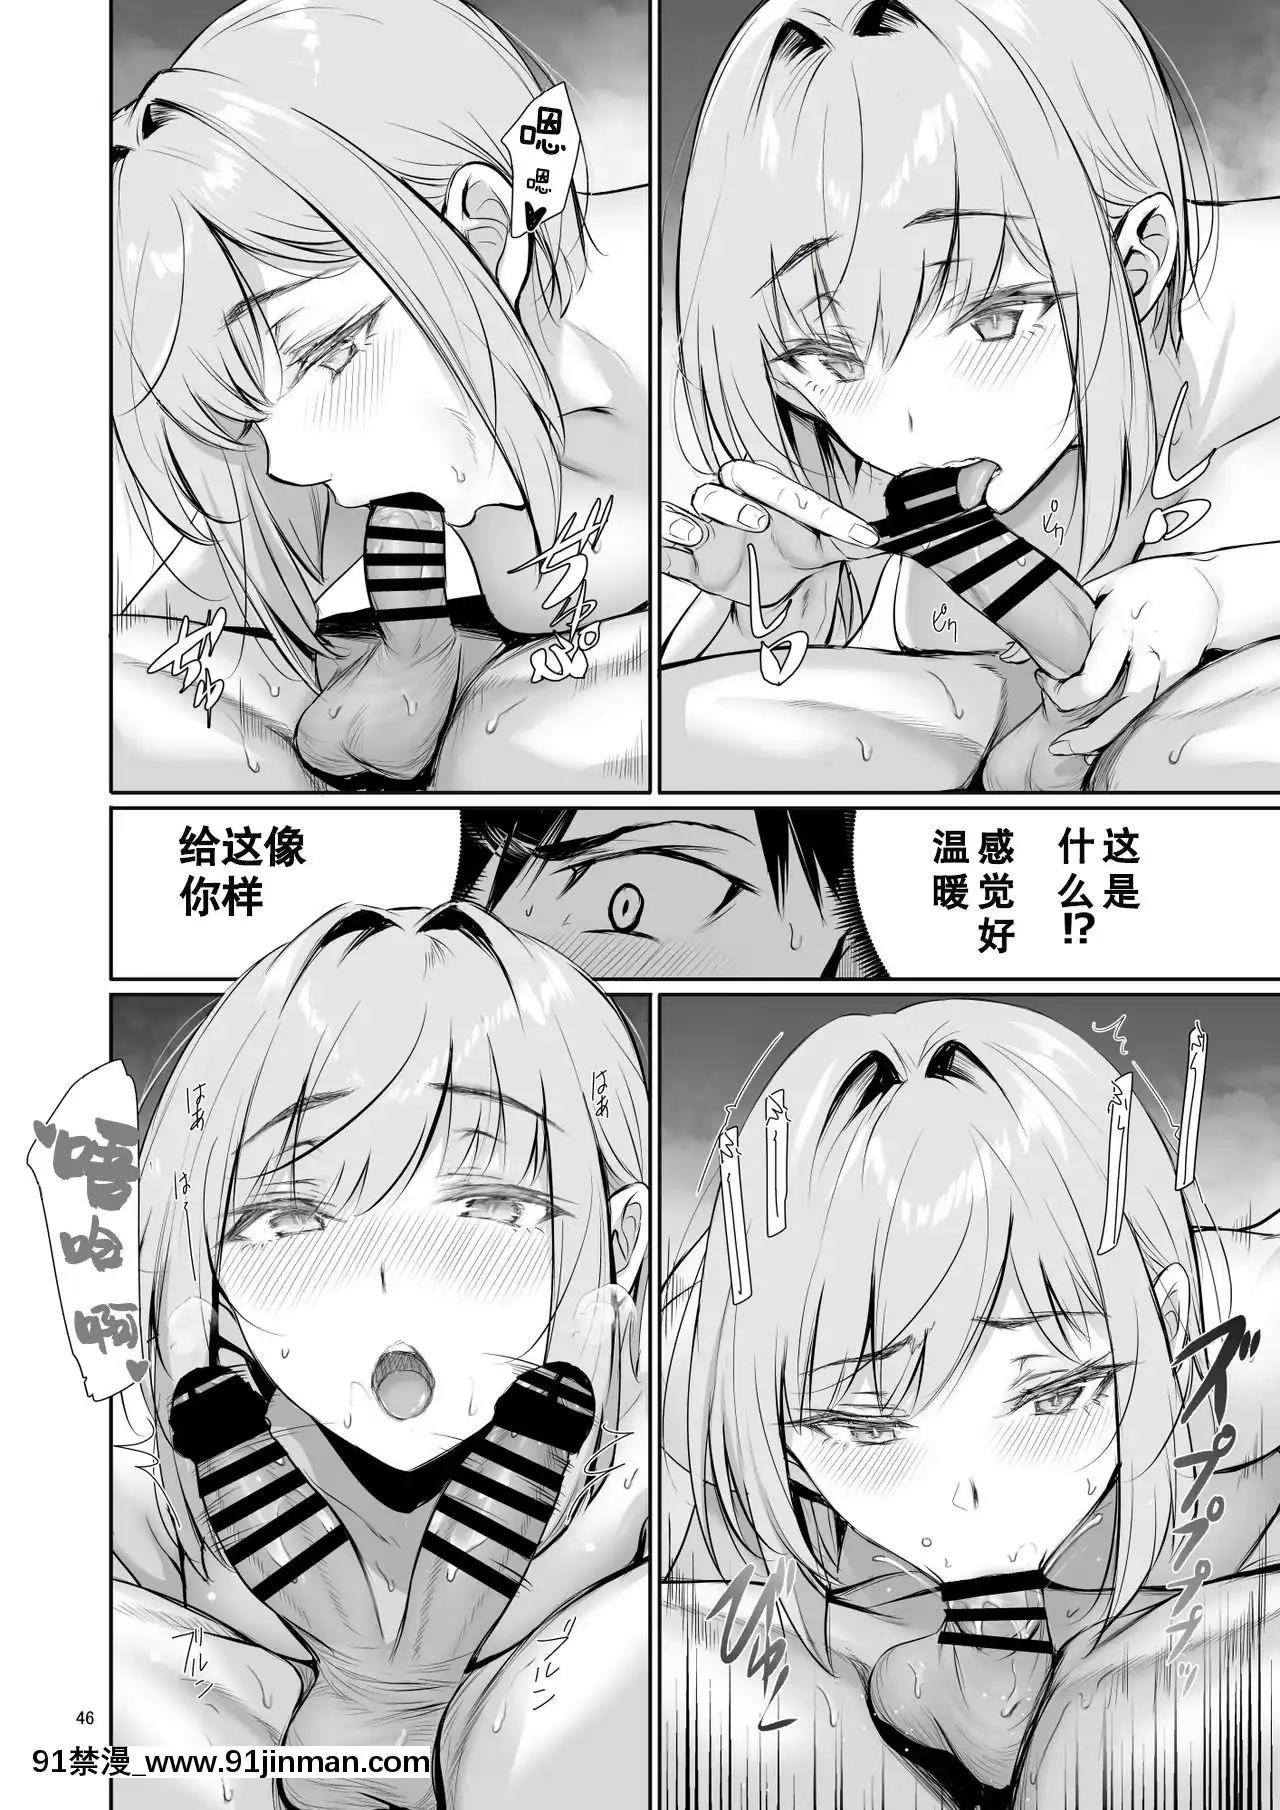 Lý do cho các cô gái Đức lên tàu để cùng nhau tắm (Dịch tiếng Trung)【truyện tranh chị em】